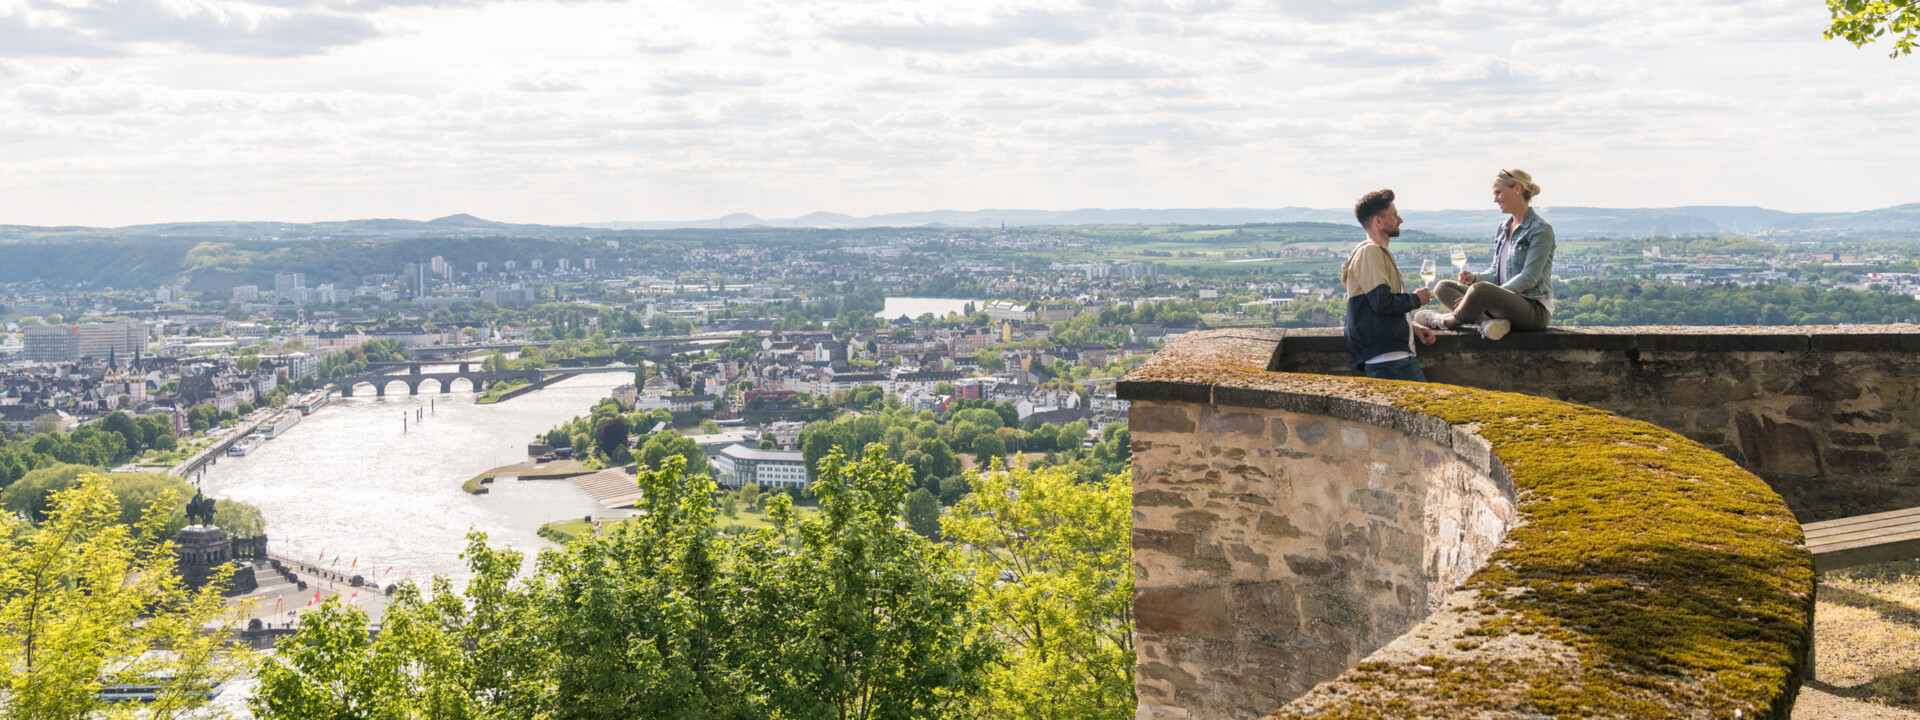 Pärchen sitzt auf der Mauer der Festung Ehrenbreitstein und hält Weingläser mit Stadt Koblenz im Hintergrund ©Koblenz-Touristik GmbH, Dominik Ketz